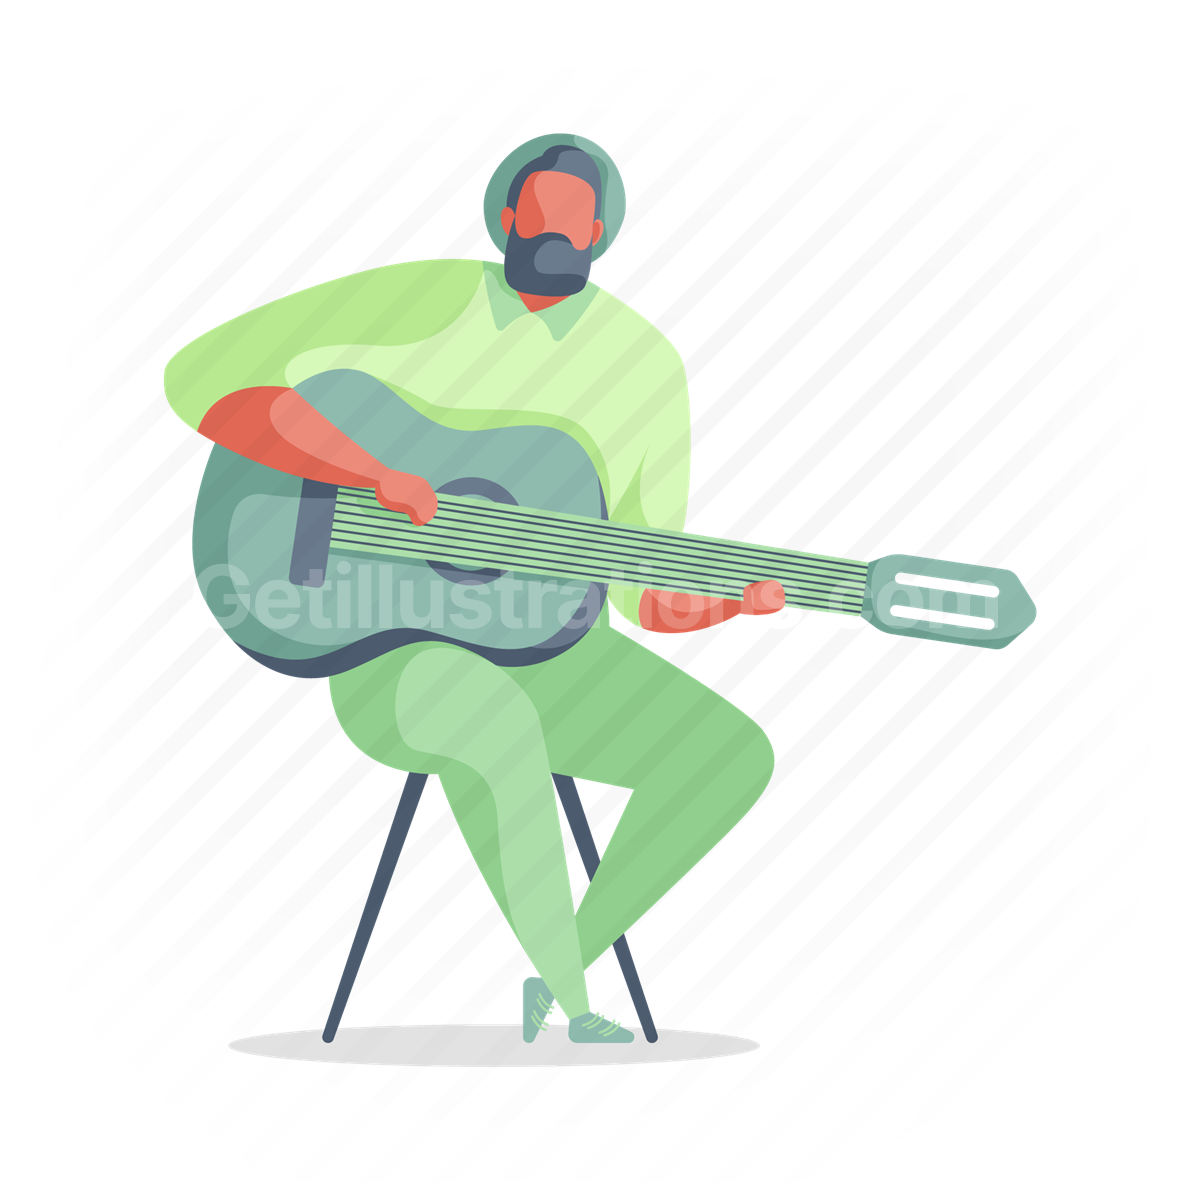 guitar, man, instrument, musician